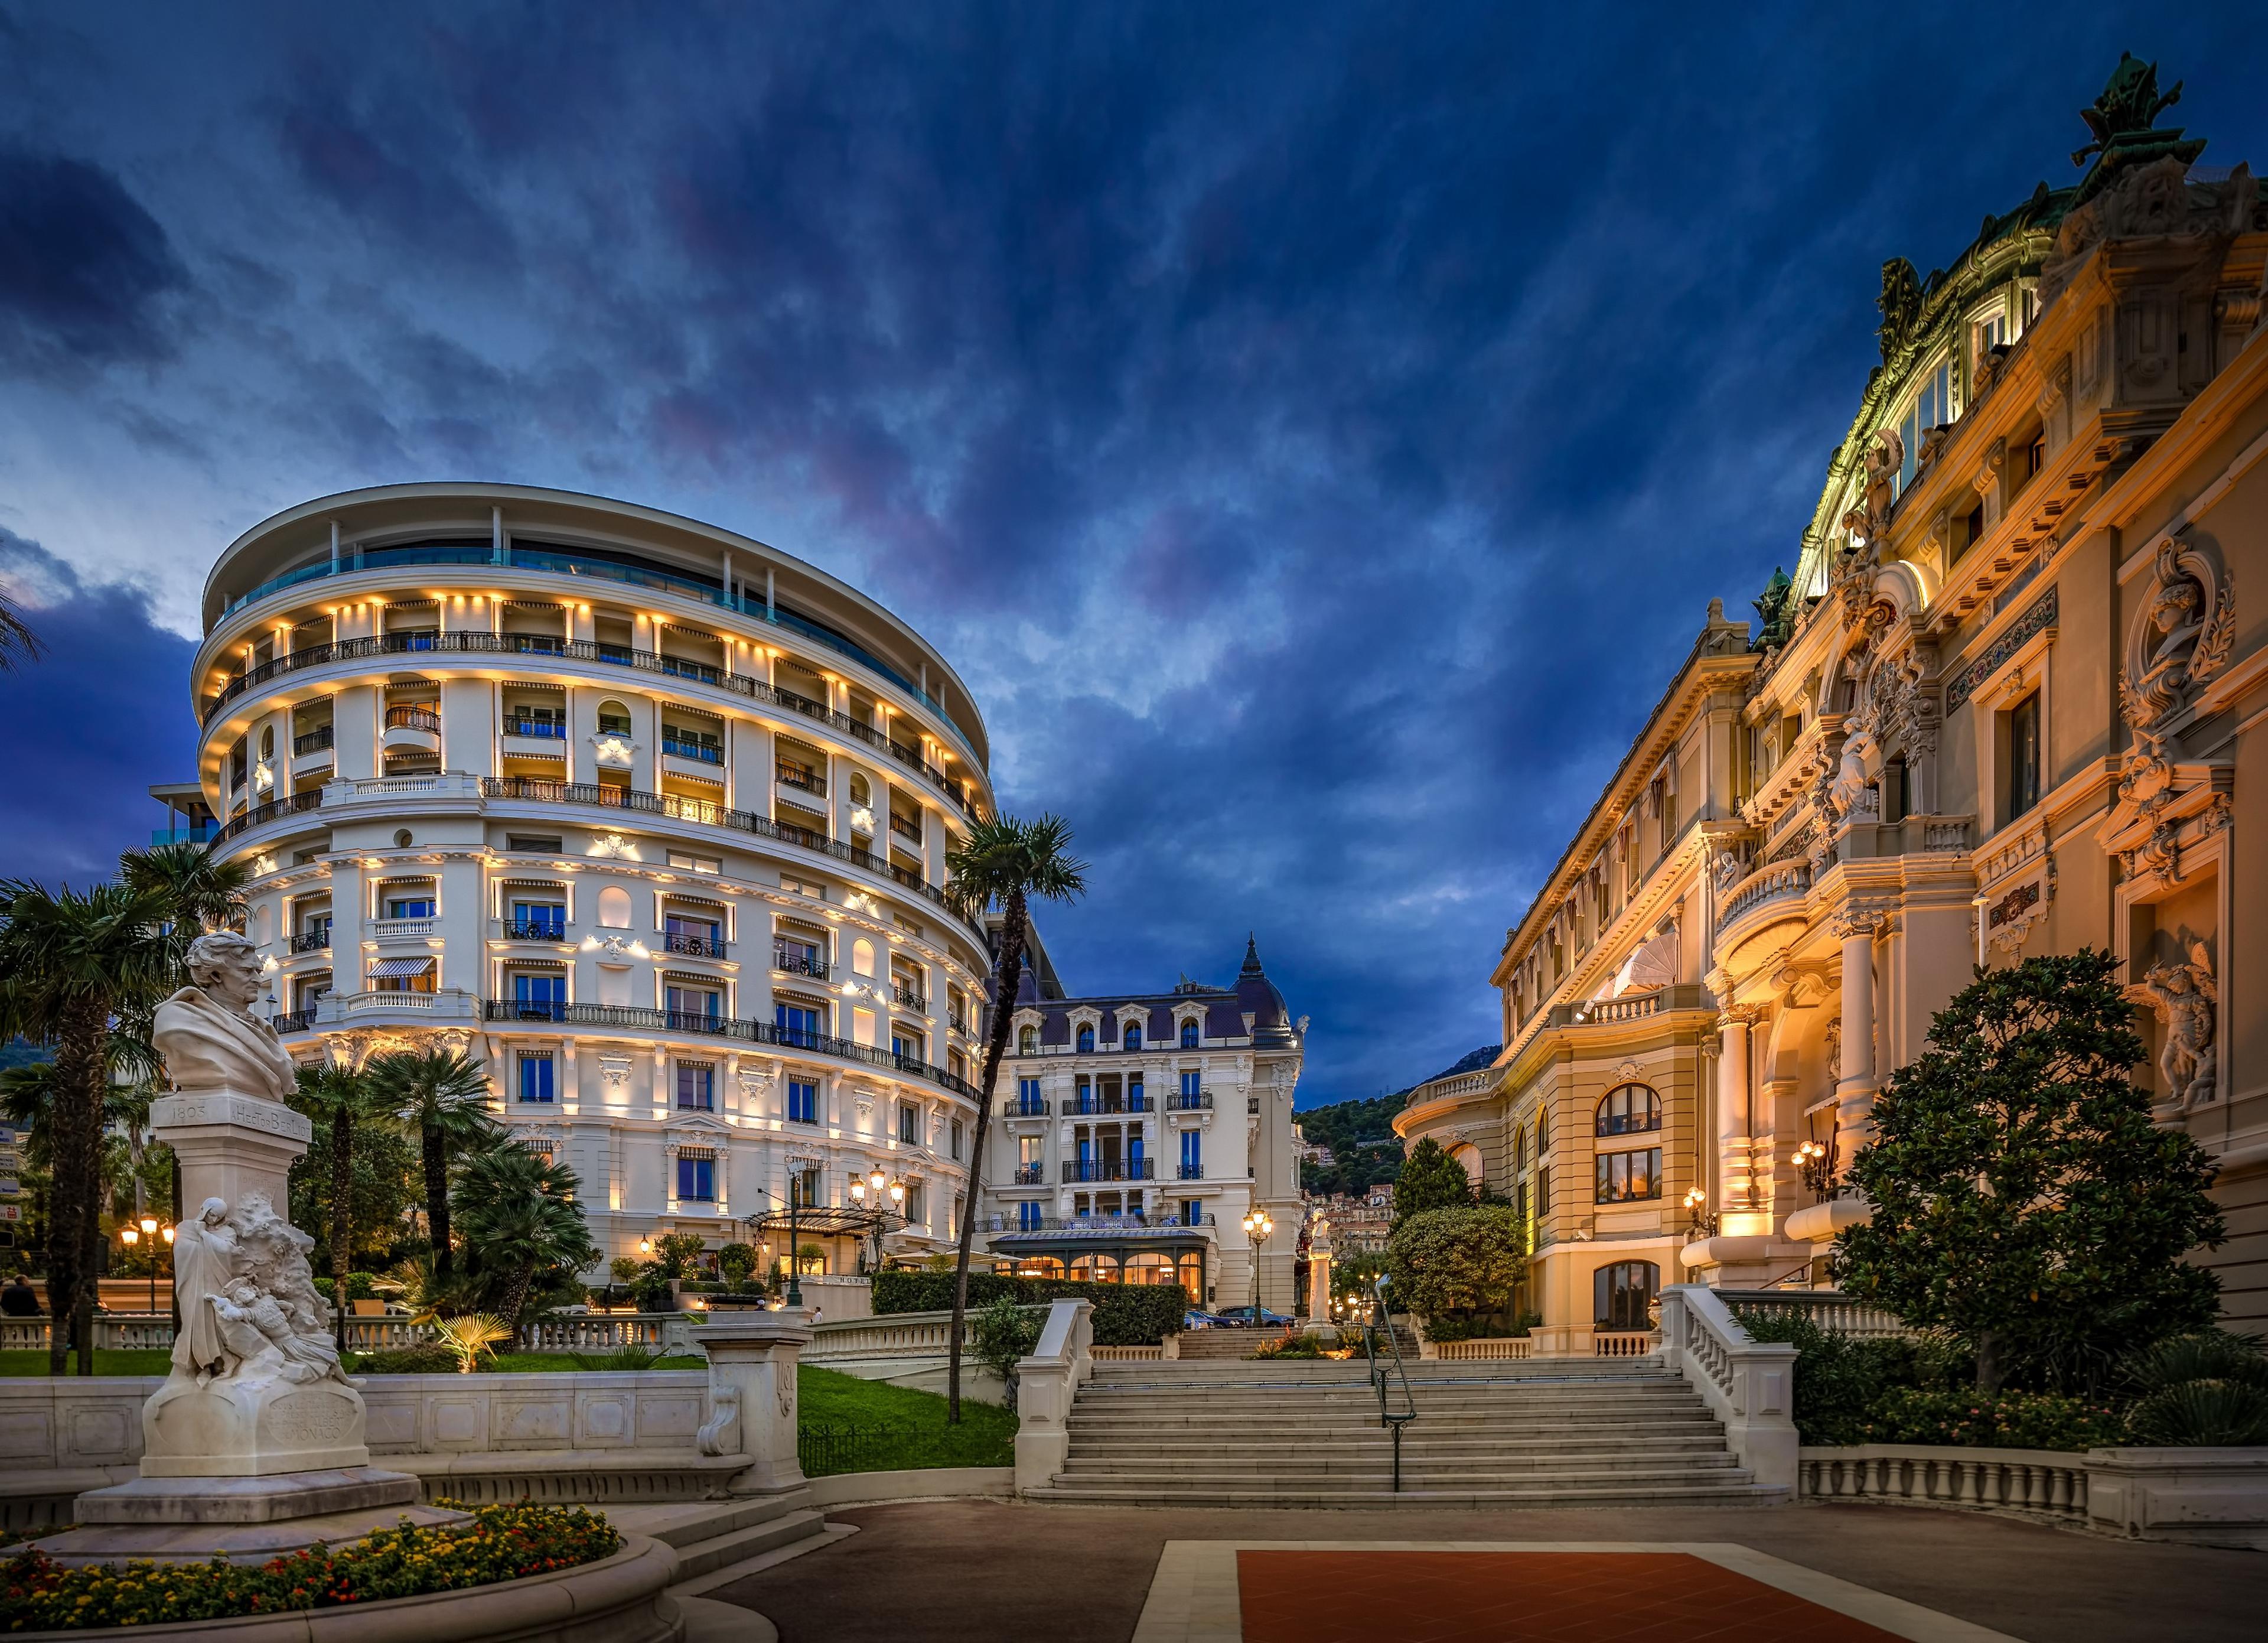 Hotel de Paris Monte-Carlo - Monte Carlo, Monaco